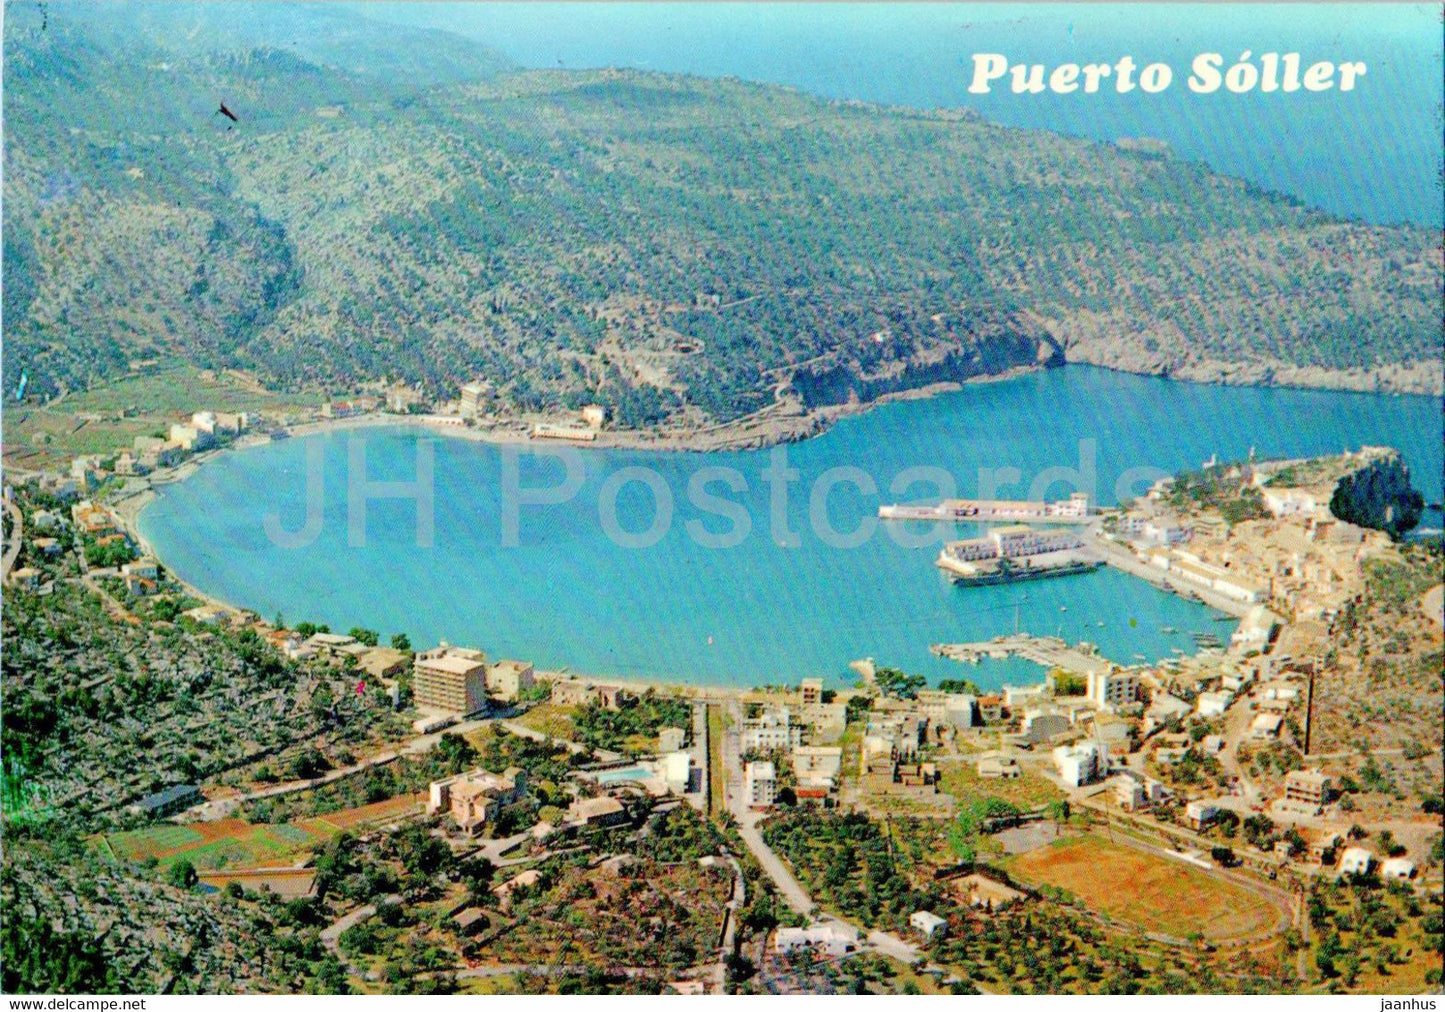 Puerto Soller - Vista aerea del Puerto - Mallorca - 2602 - Spain - unused - JH Postcards